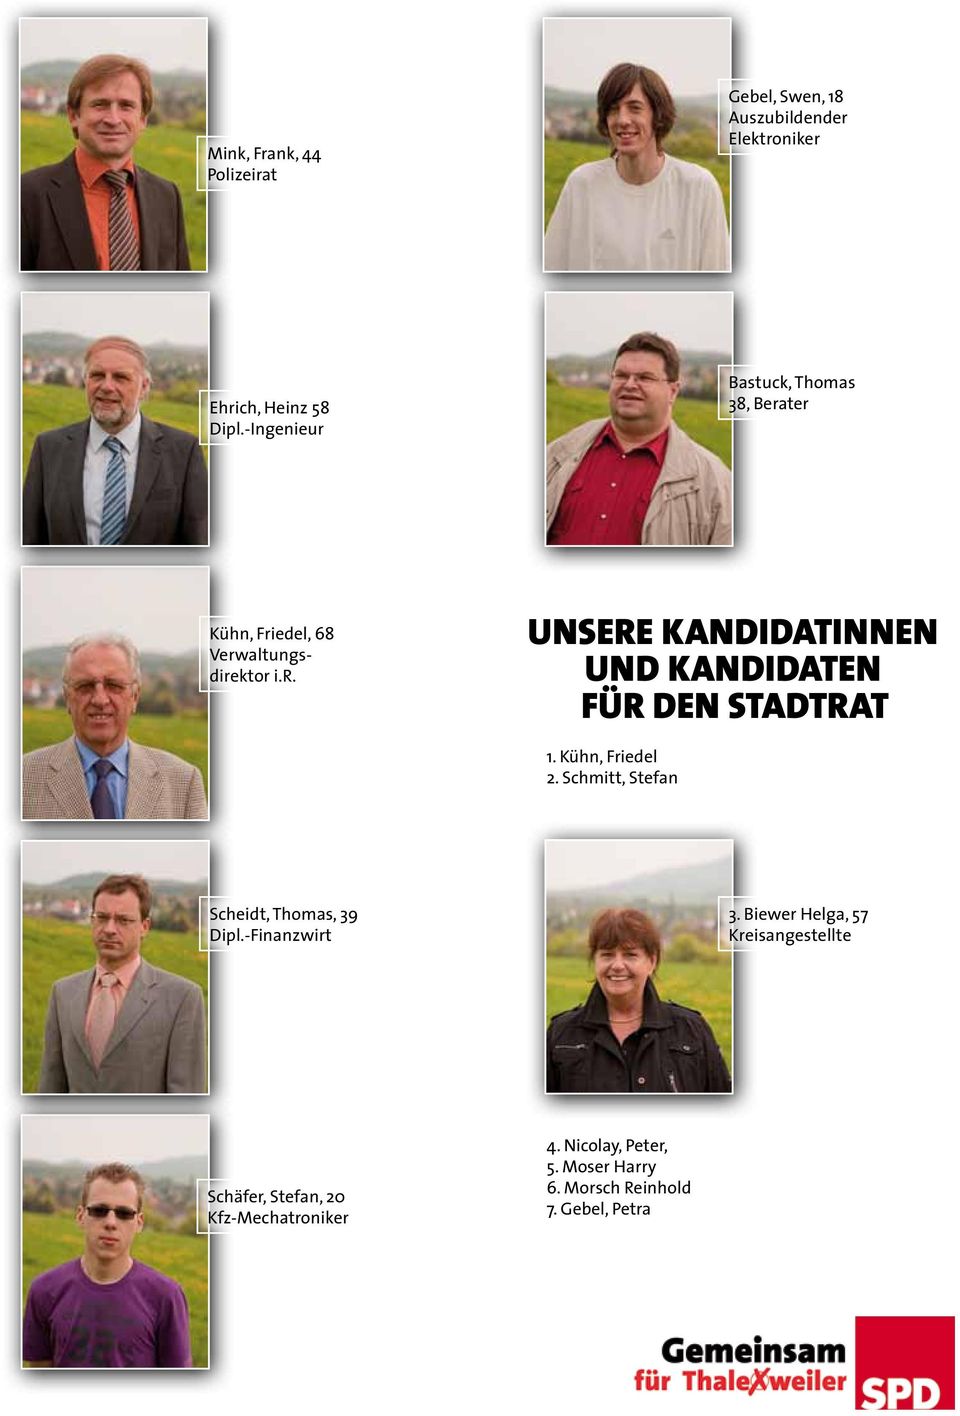 Kühn, Friedel 2. Schmitt, Stefan Scheidt, Thomas, 39 Dipl.-Finanzwirt 3.